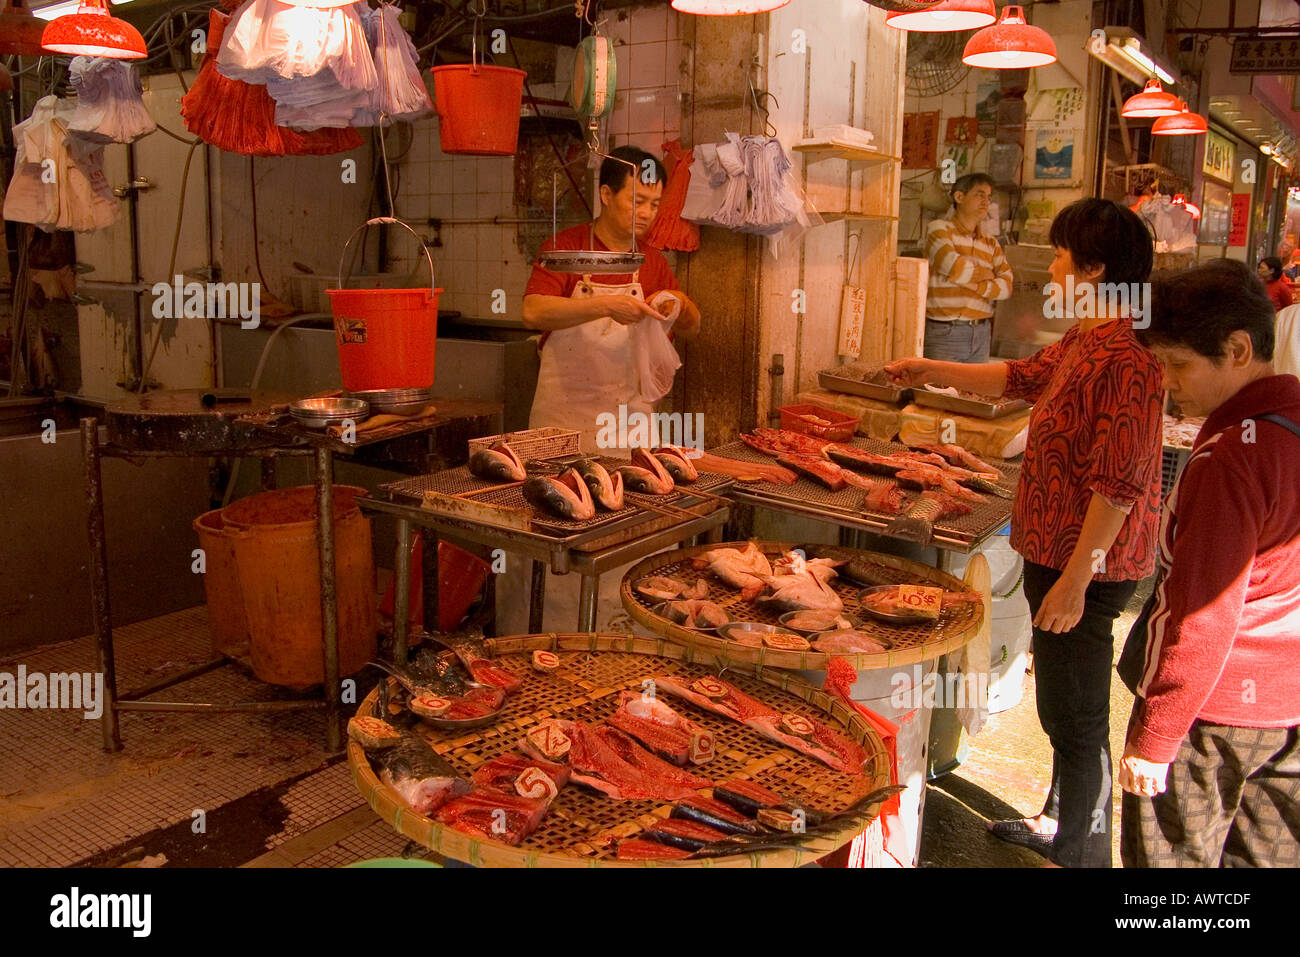 dh Fischhändler Wet Market Shop SCHEIN SHUI PO HONG KONG ASIEN Verkäufer anzeigen Kunden kaufen kunden china Menschen Straße chinesisch Fischmärkte zum Einkaufen Stockfoto